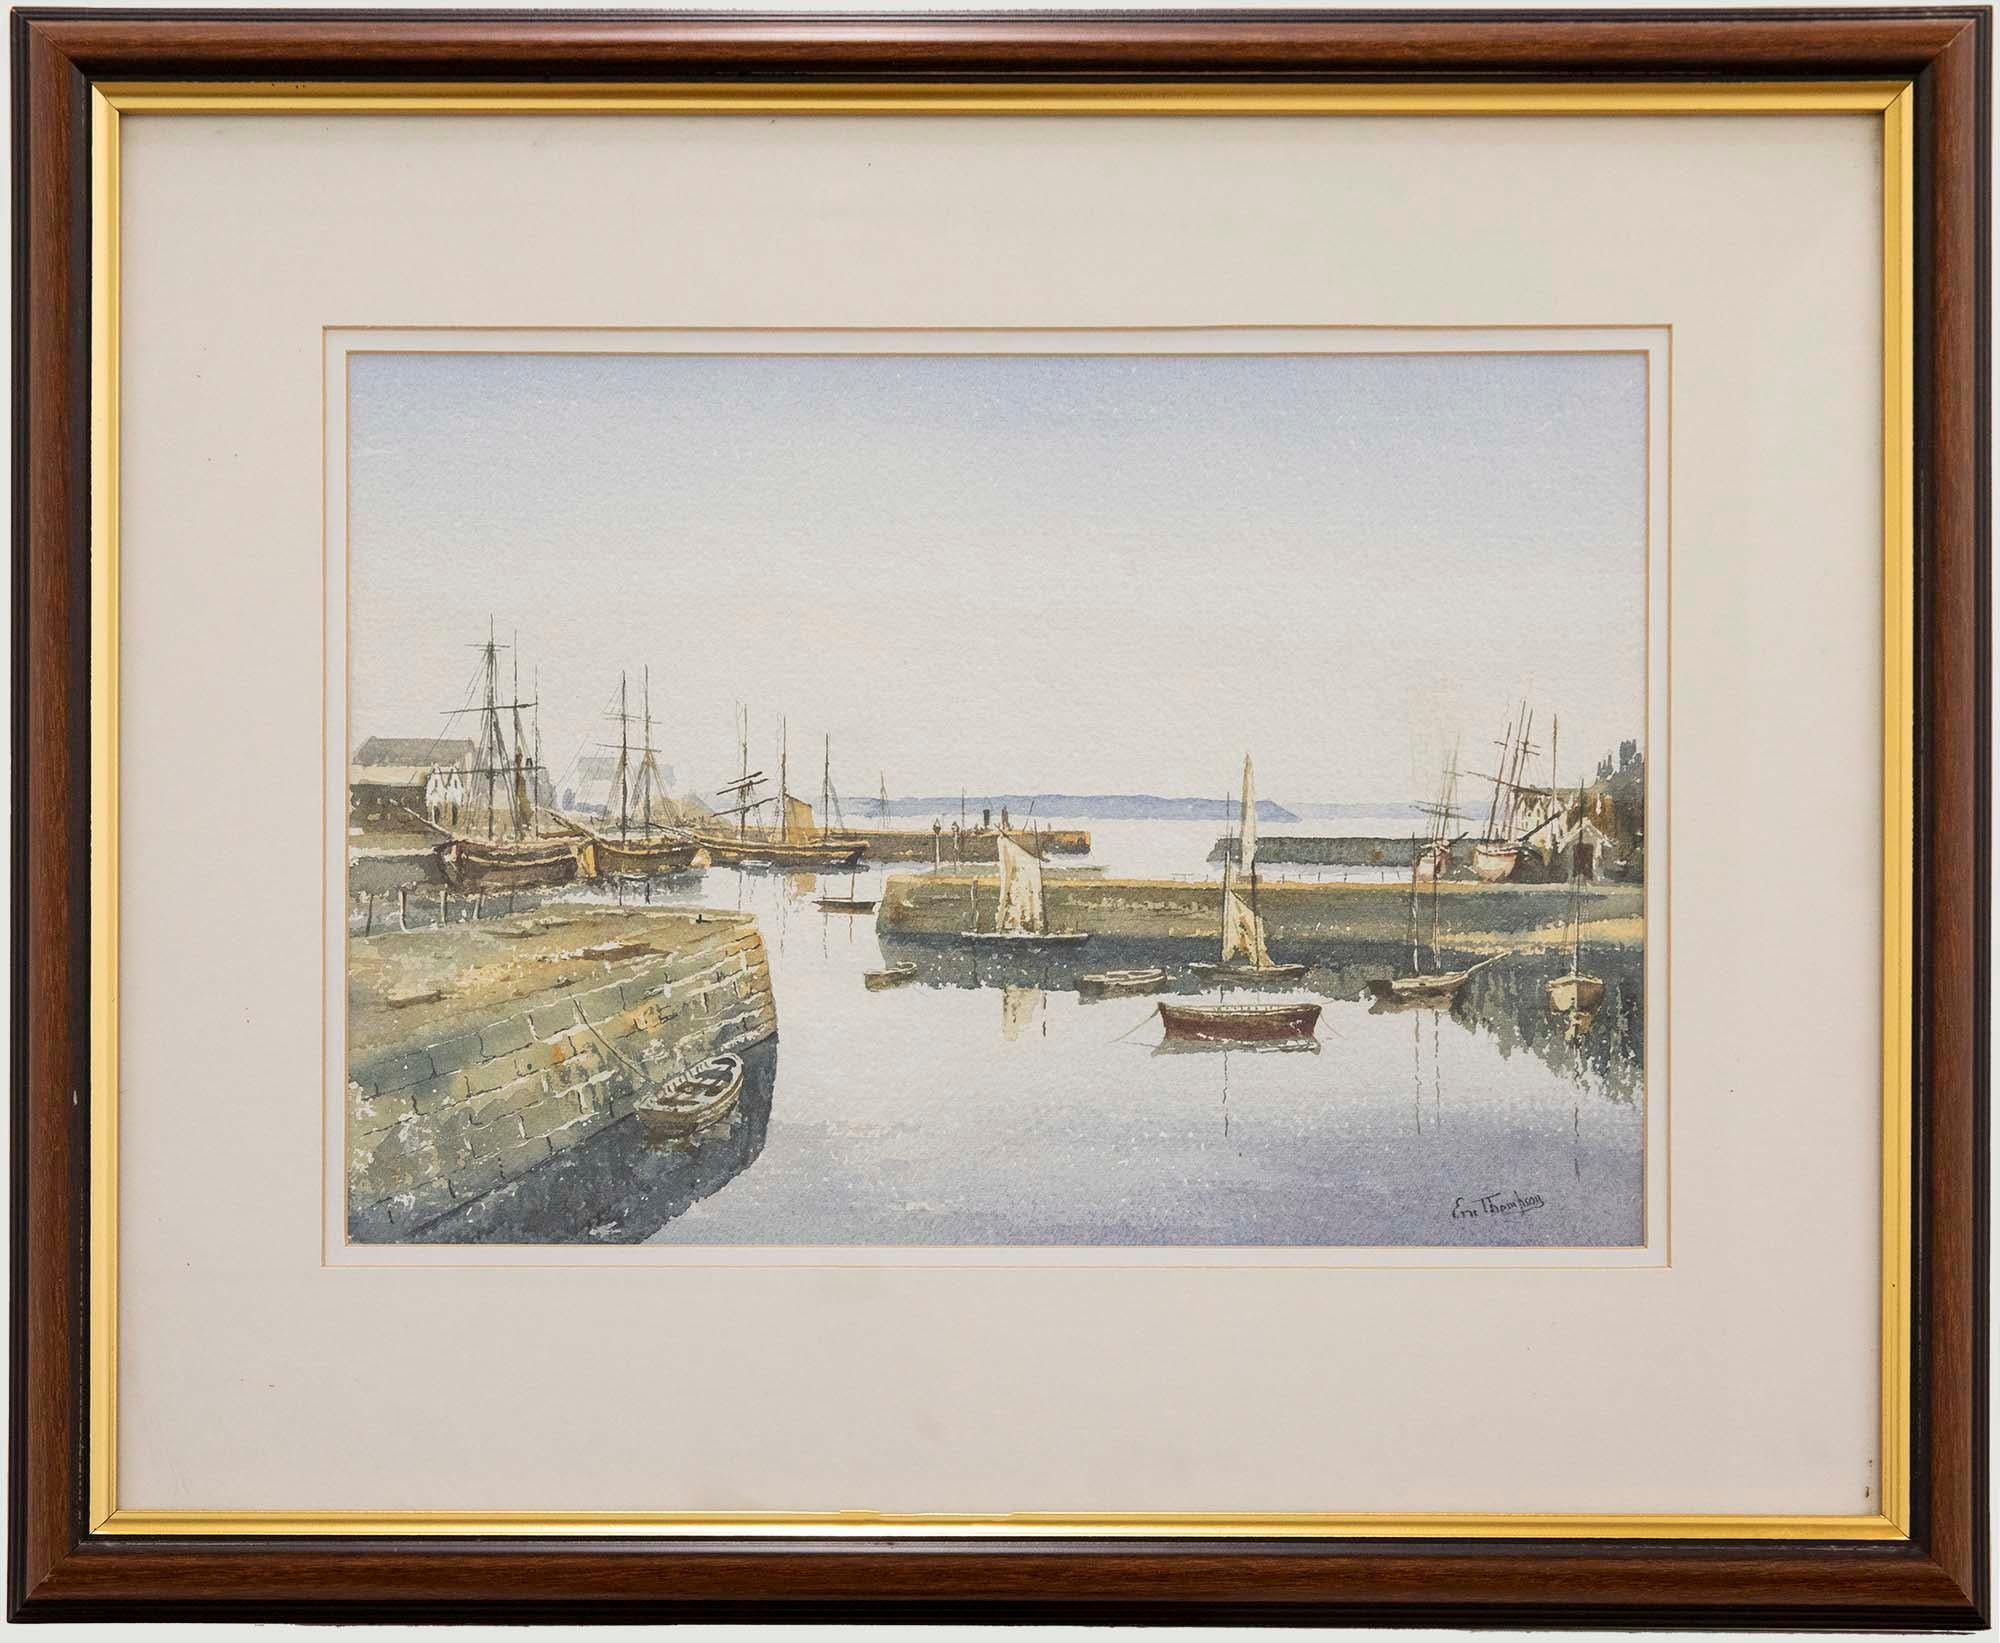 Une charmante aquarelle représentant des bateaux de pêche amarrés dans un port paisible par une journée d'été. Signé en bas à droite. Présenté dans un cadre en bois avec un emboîtage doré. Sur le papier.